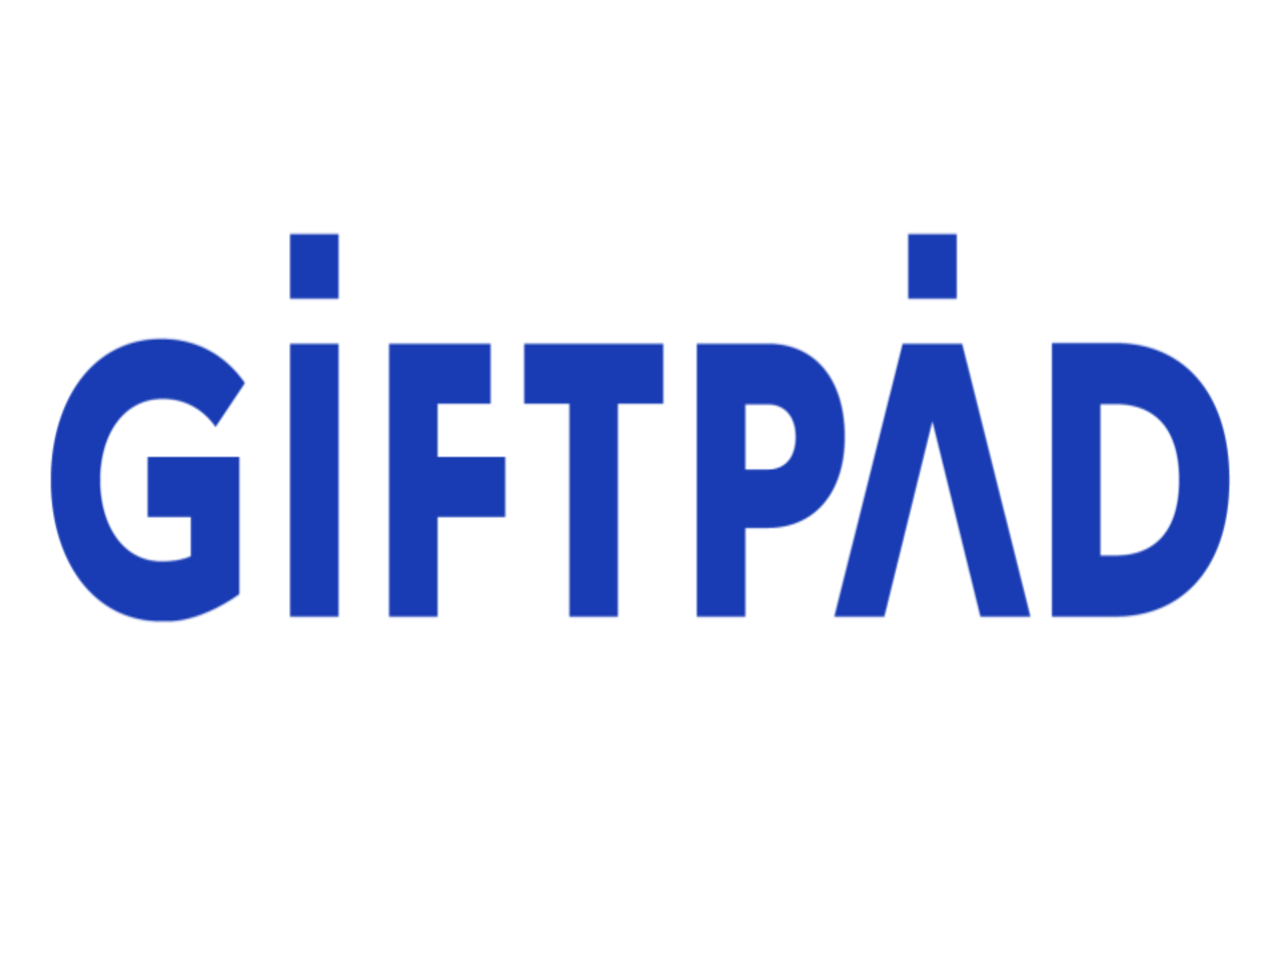 同社は、“ギフトで世界を変える”というビジョンを掲げ、ギフトサービス『Giftpad egift』を開発し、提供するITベンチャー企業である。